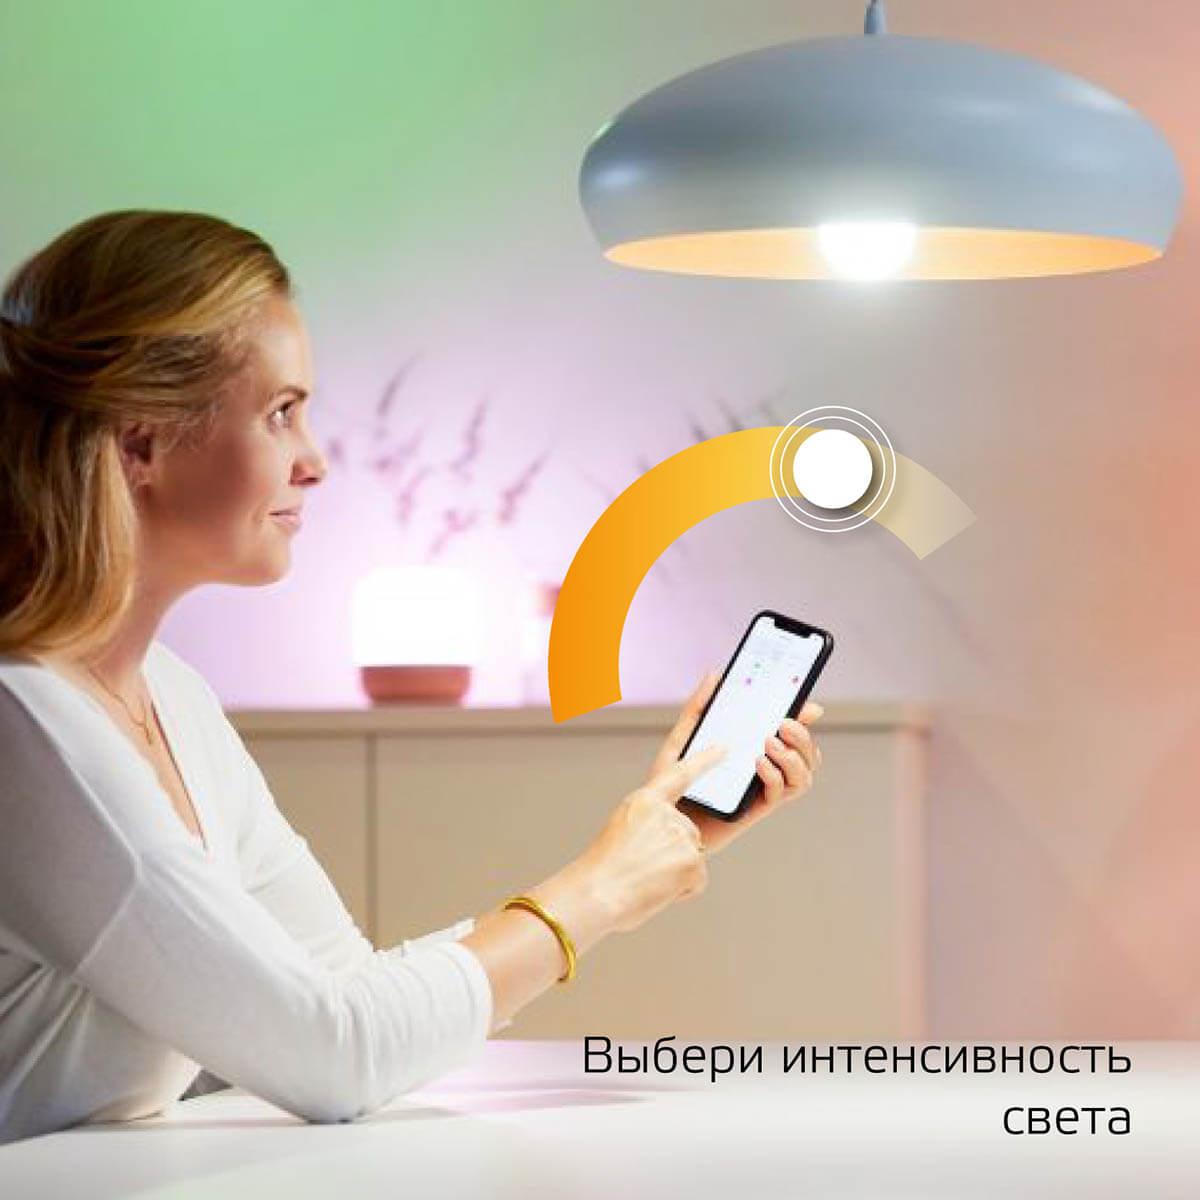 Лампа светодиодная диммируемая Gauss Smart Home E14 5W 2700K матовая 1100112